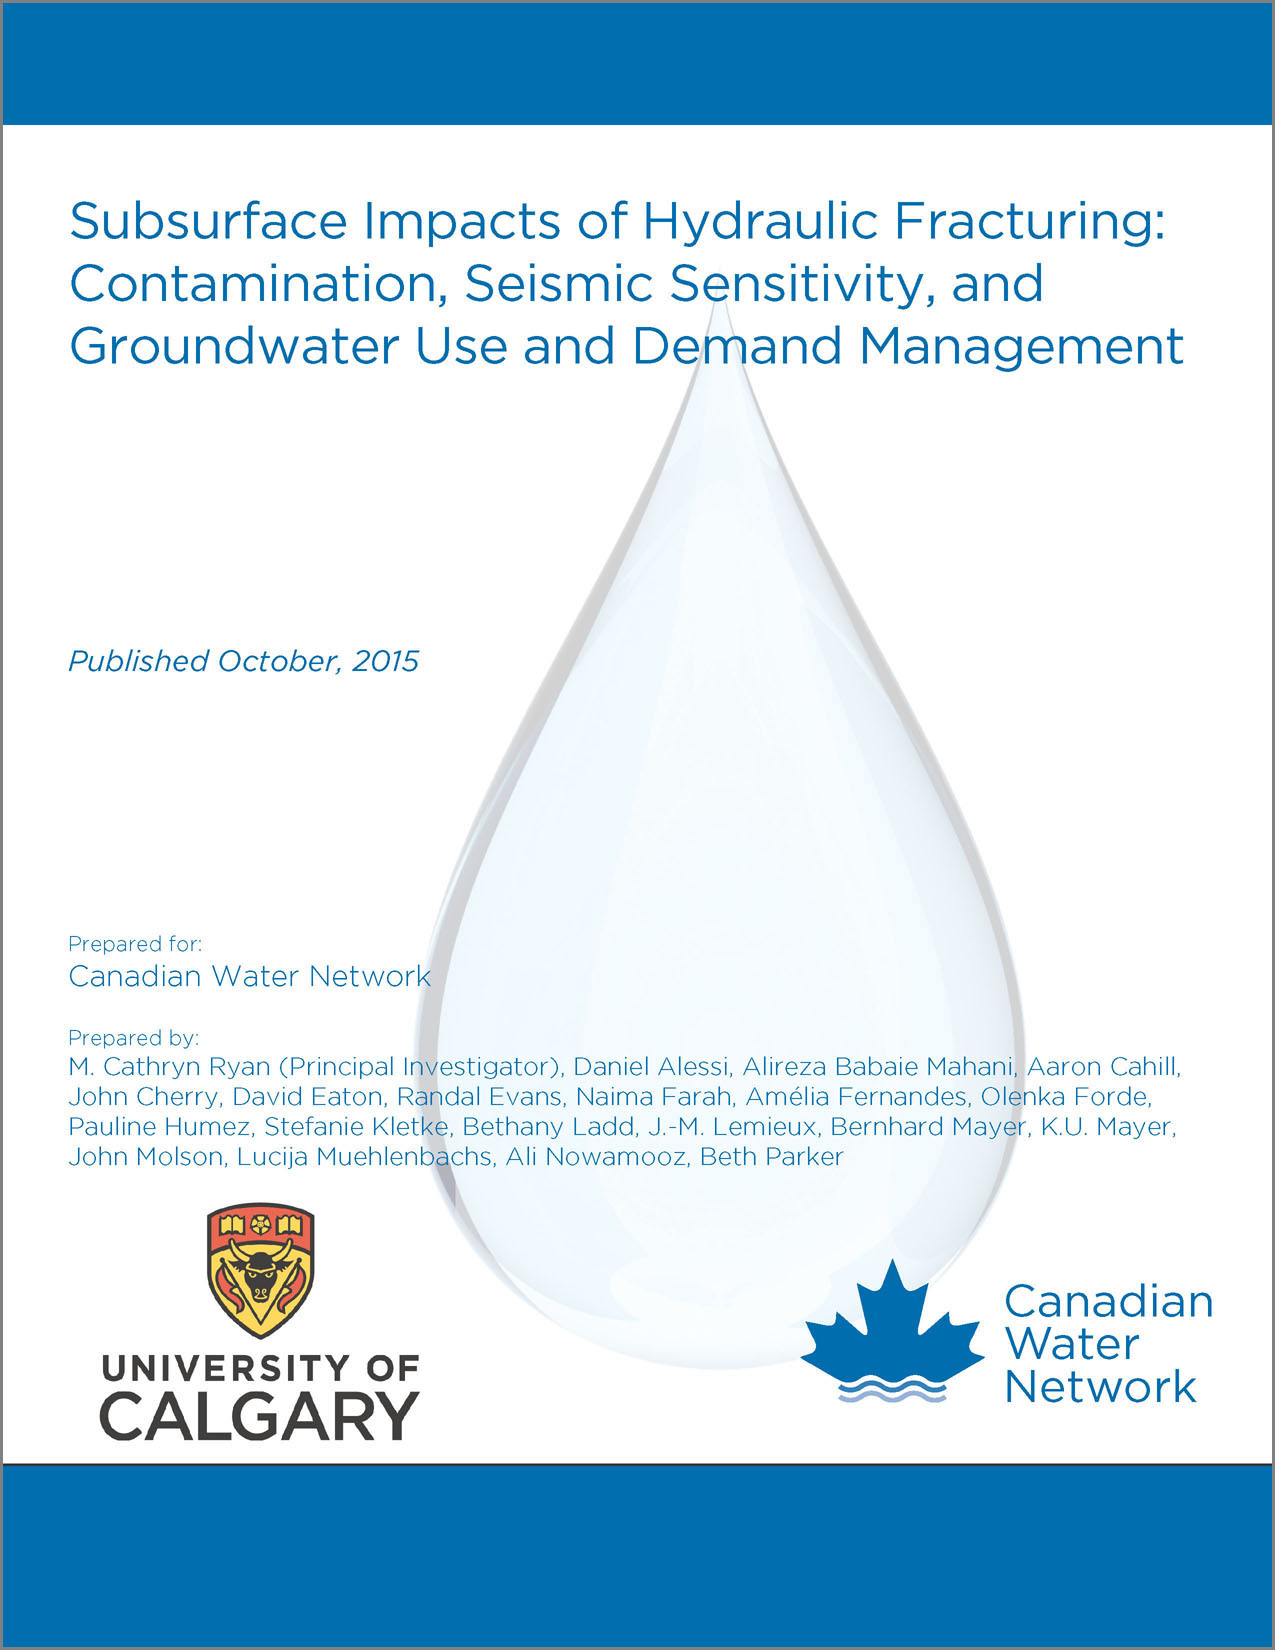 Les impacts souterrains de la fracturation hydraulique : contamination, sensibilité sismique et gestion de l’utilisation et de la demande en eau souterraine